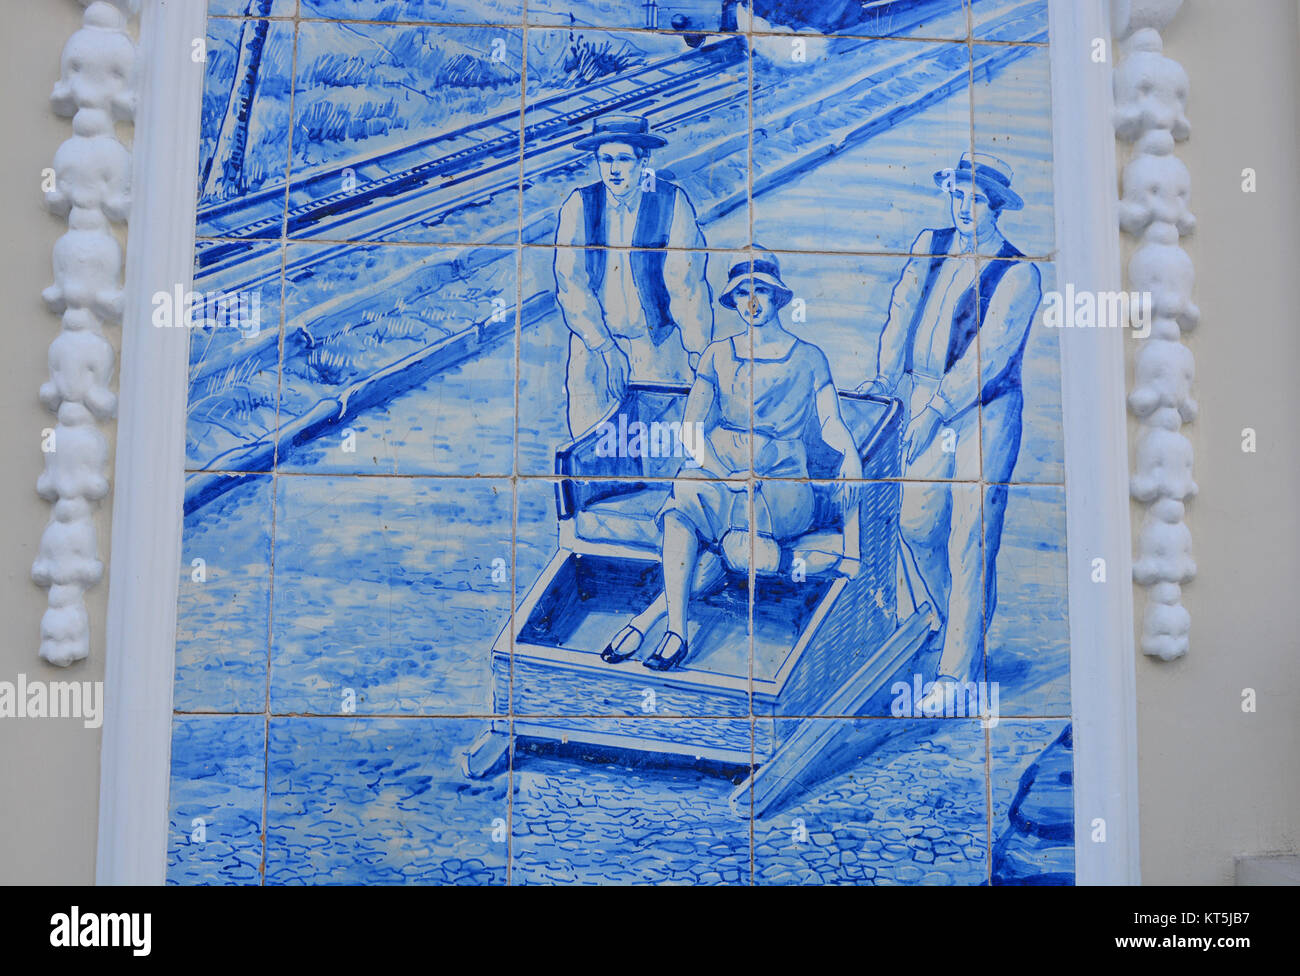 La célèbre piste de traîneau en osier illustré à carreaux bleus peints à la main, ou des azulejos, sur la façade de l'Hôtel Ritz, Funchal, Madeira, Portugal Banque D'Images